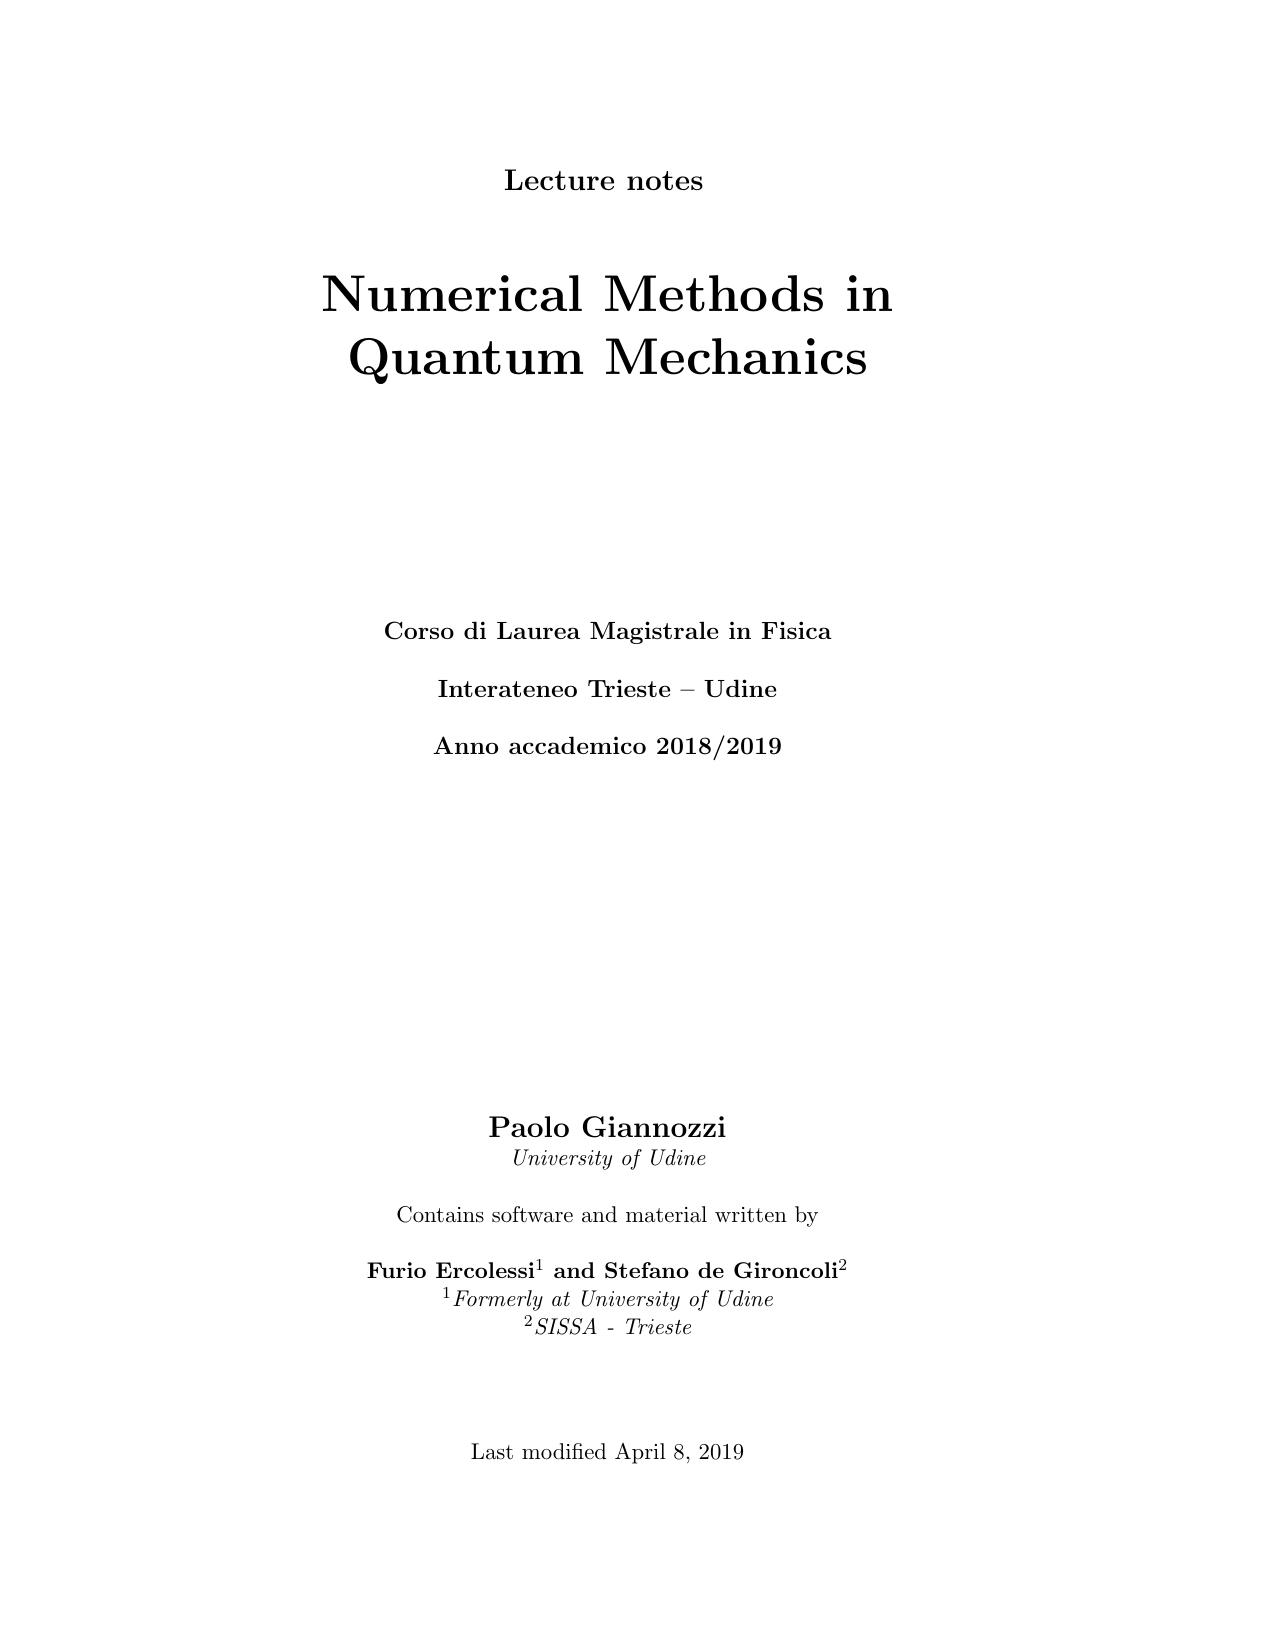 Numerical Methods in quantum Mechanics 2019